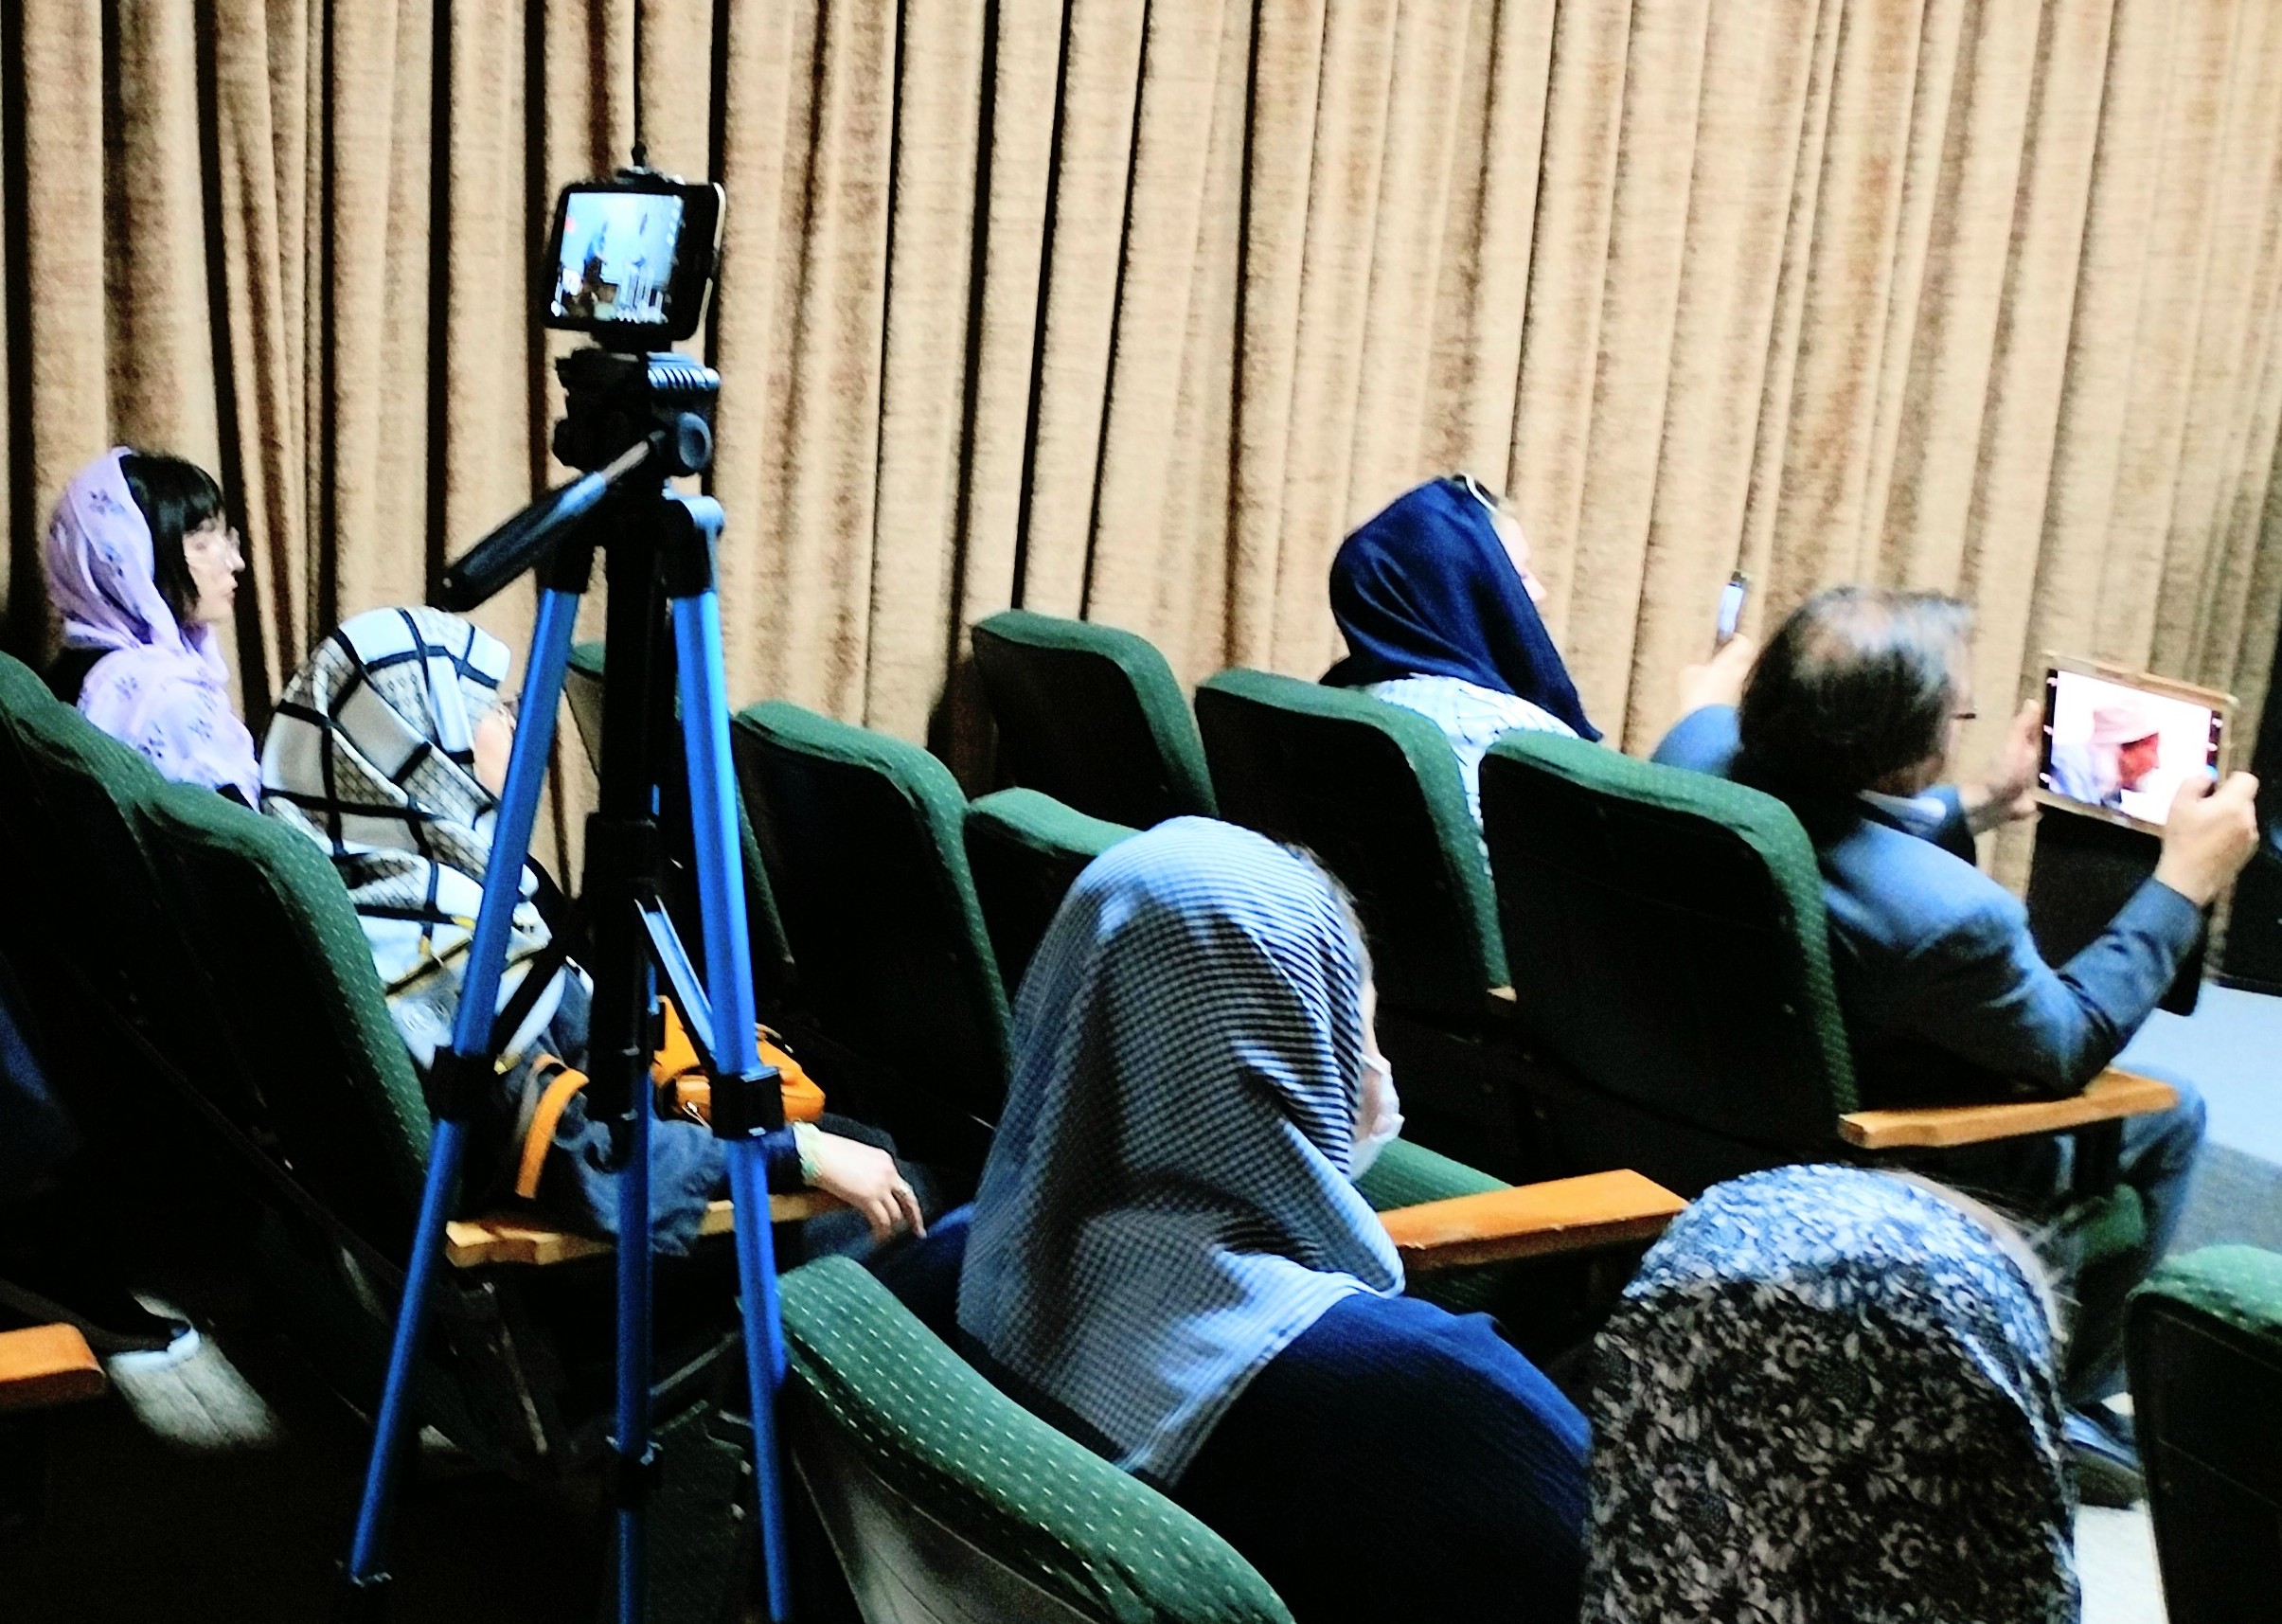 نشست صمیمانه استاد نیکانپور و استاد گرمچی برگزار شد | انجمن هنرهای تجسمی استان اردبیل ـ جامعه تخصصی هنرهای تجسمی